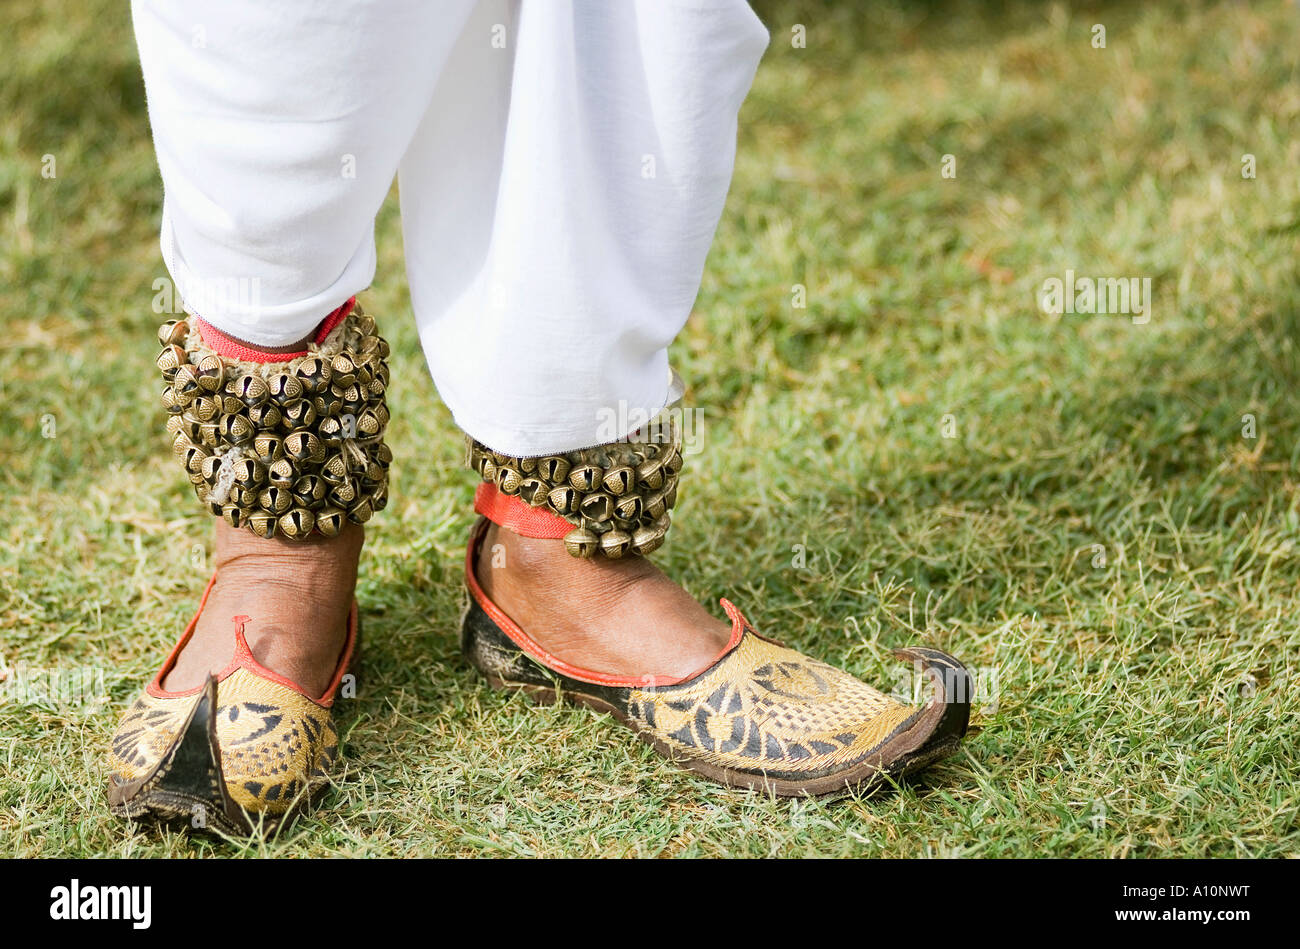 Vue en bas de jambe d'une personne portant un bracelet de cheville avec clochettes, Jaipur, Rajasthan, Inde Banque D'Images